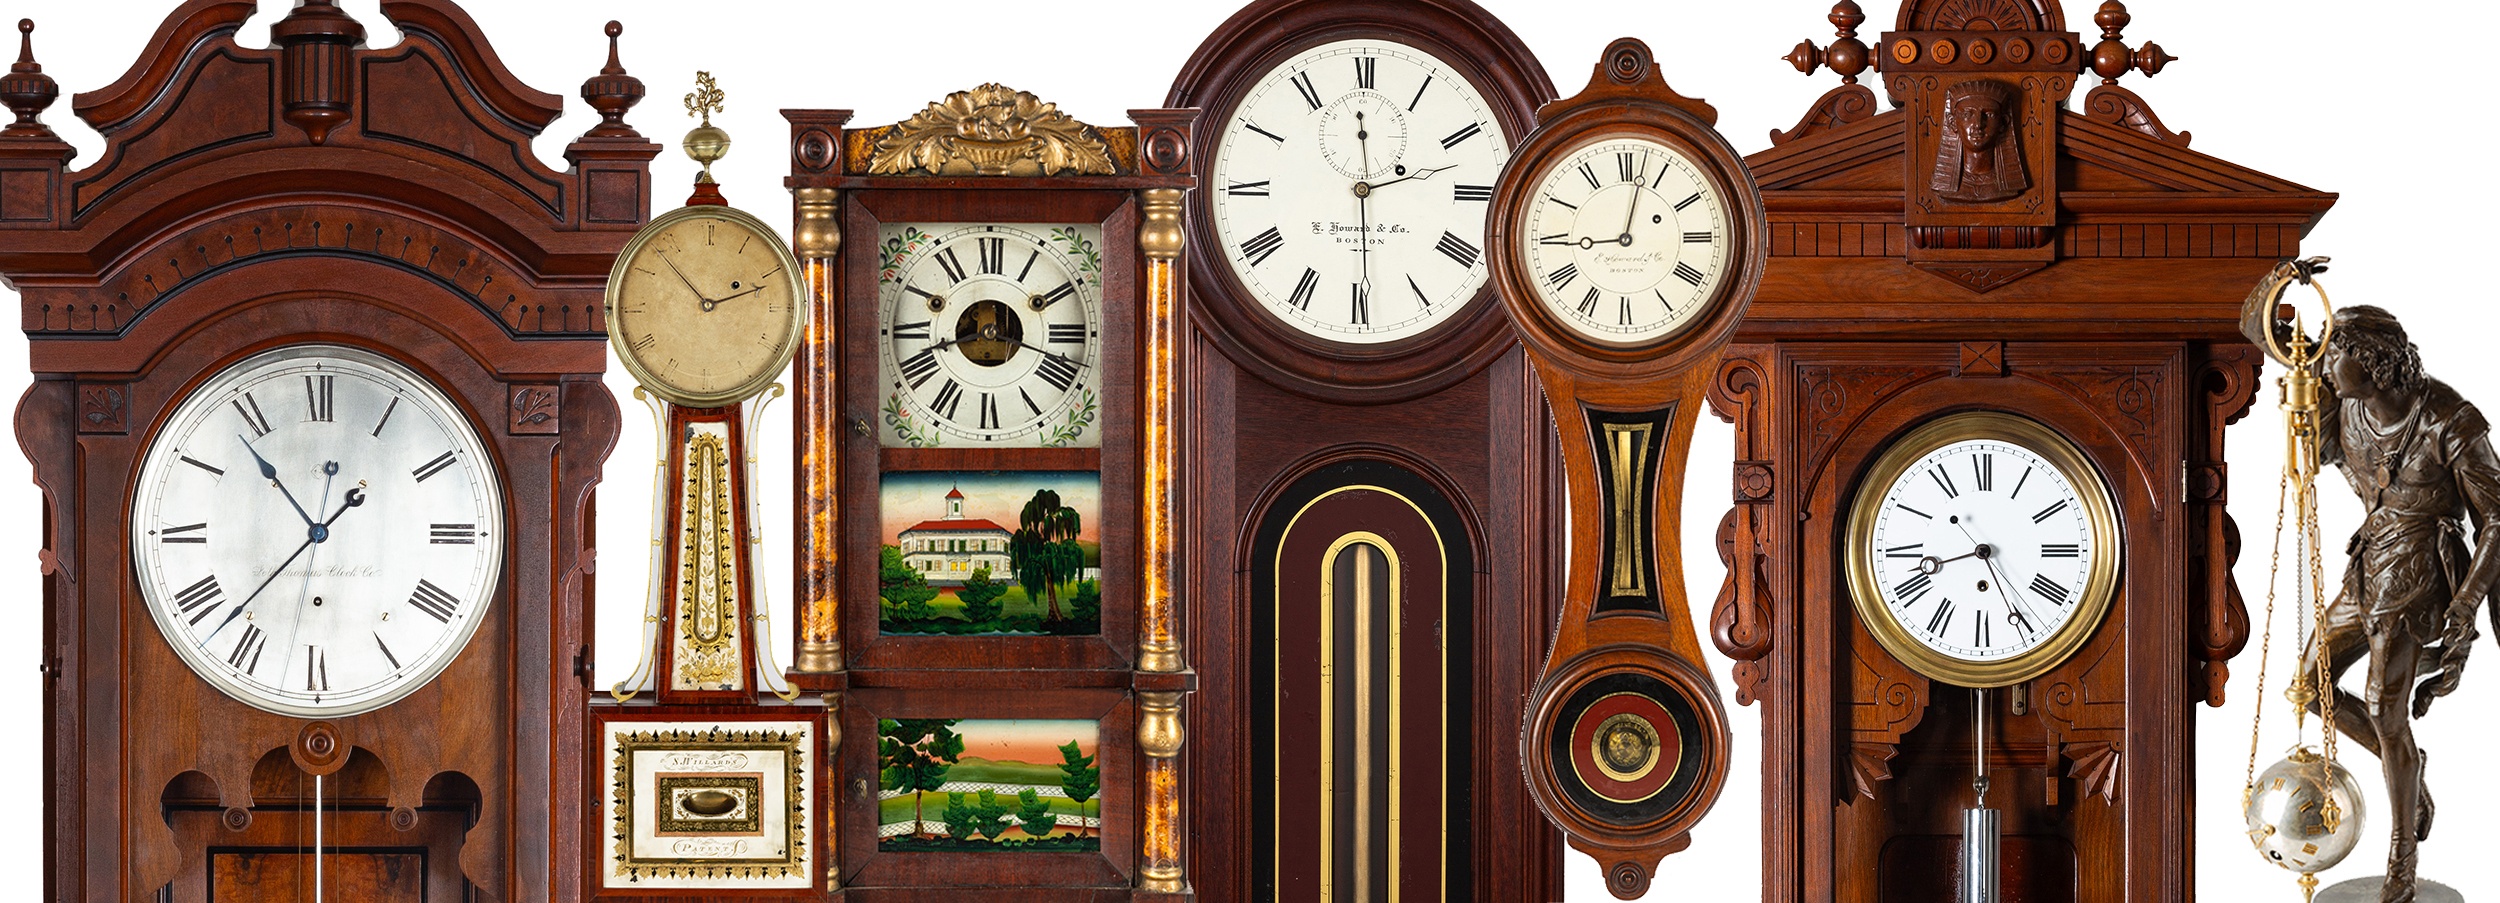 Clocks & Timepieces